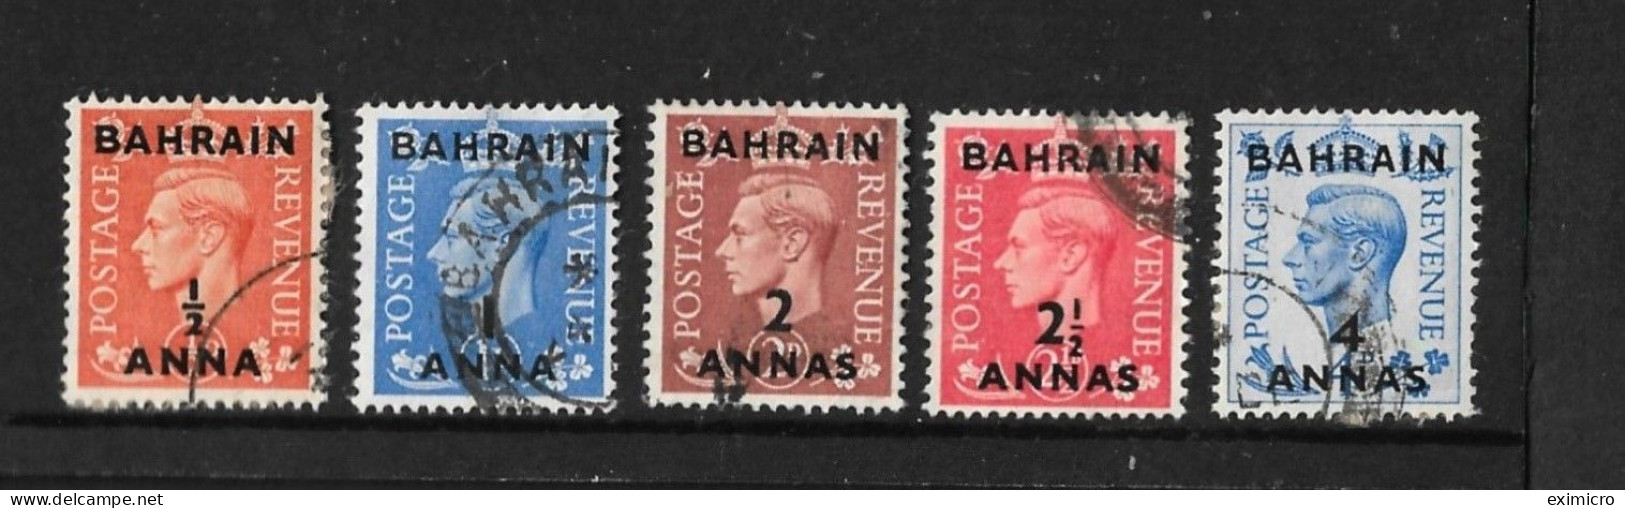 BAHRAIN 1950 - 1955 VALUES TO 4a On 4d SG 71,72,74,75,76 FINE USED Cat £30 - Bahreïn (...-1965)